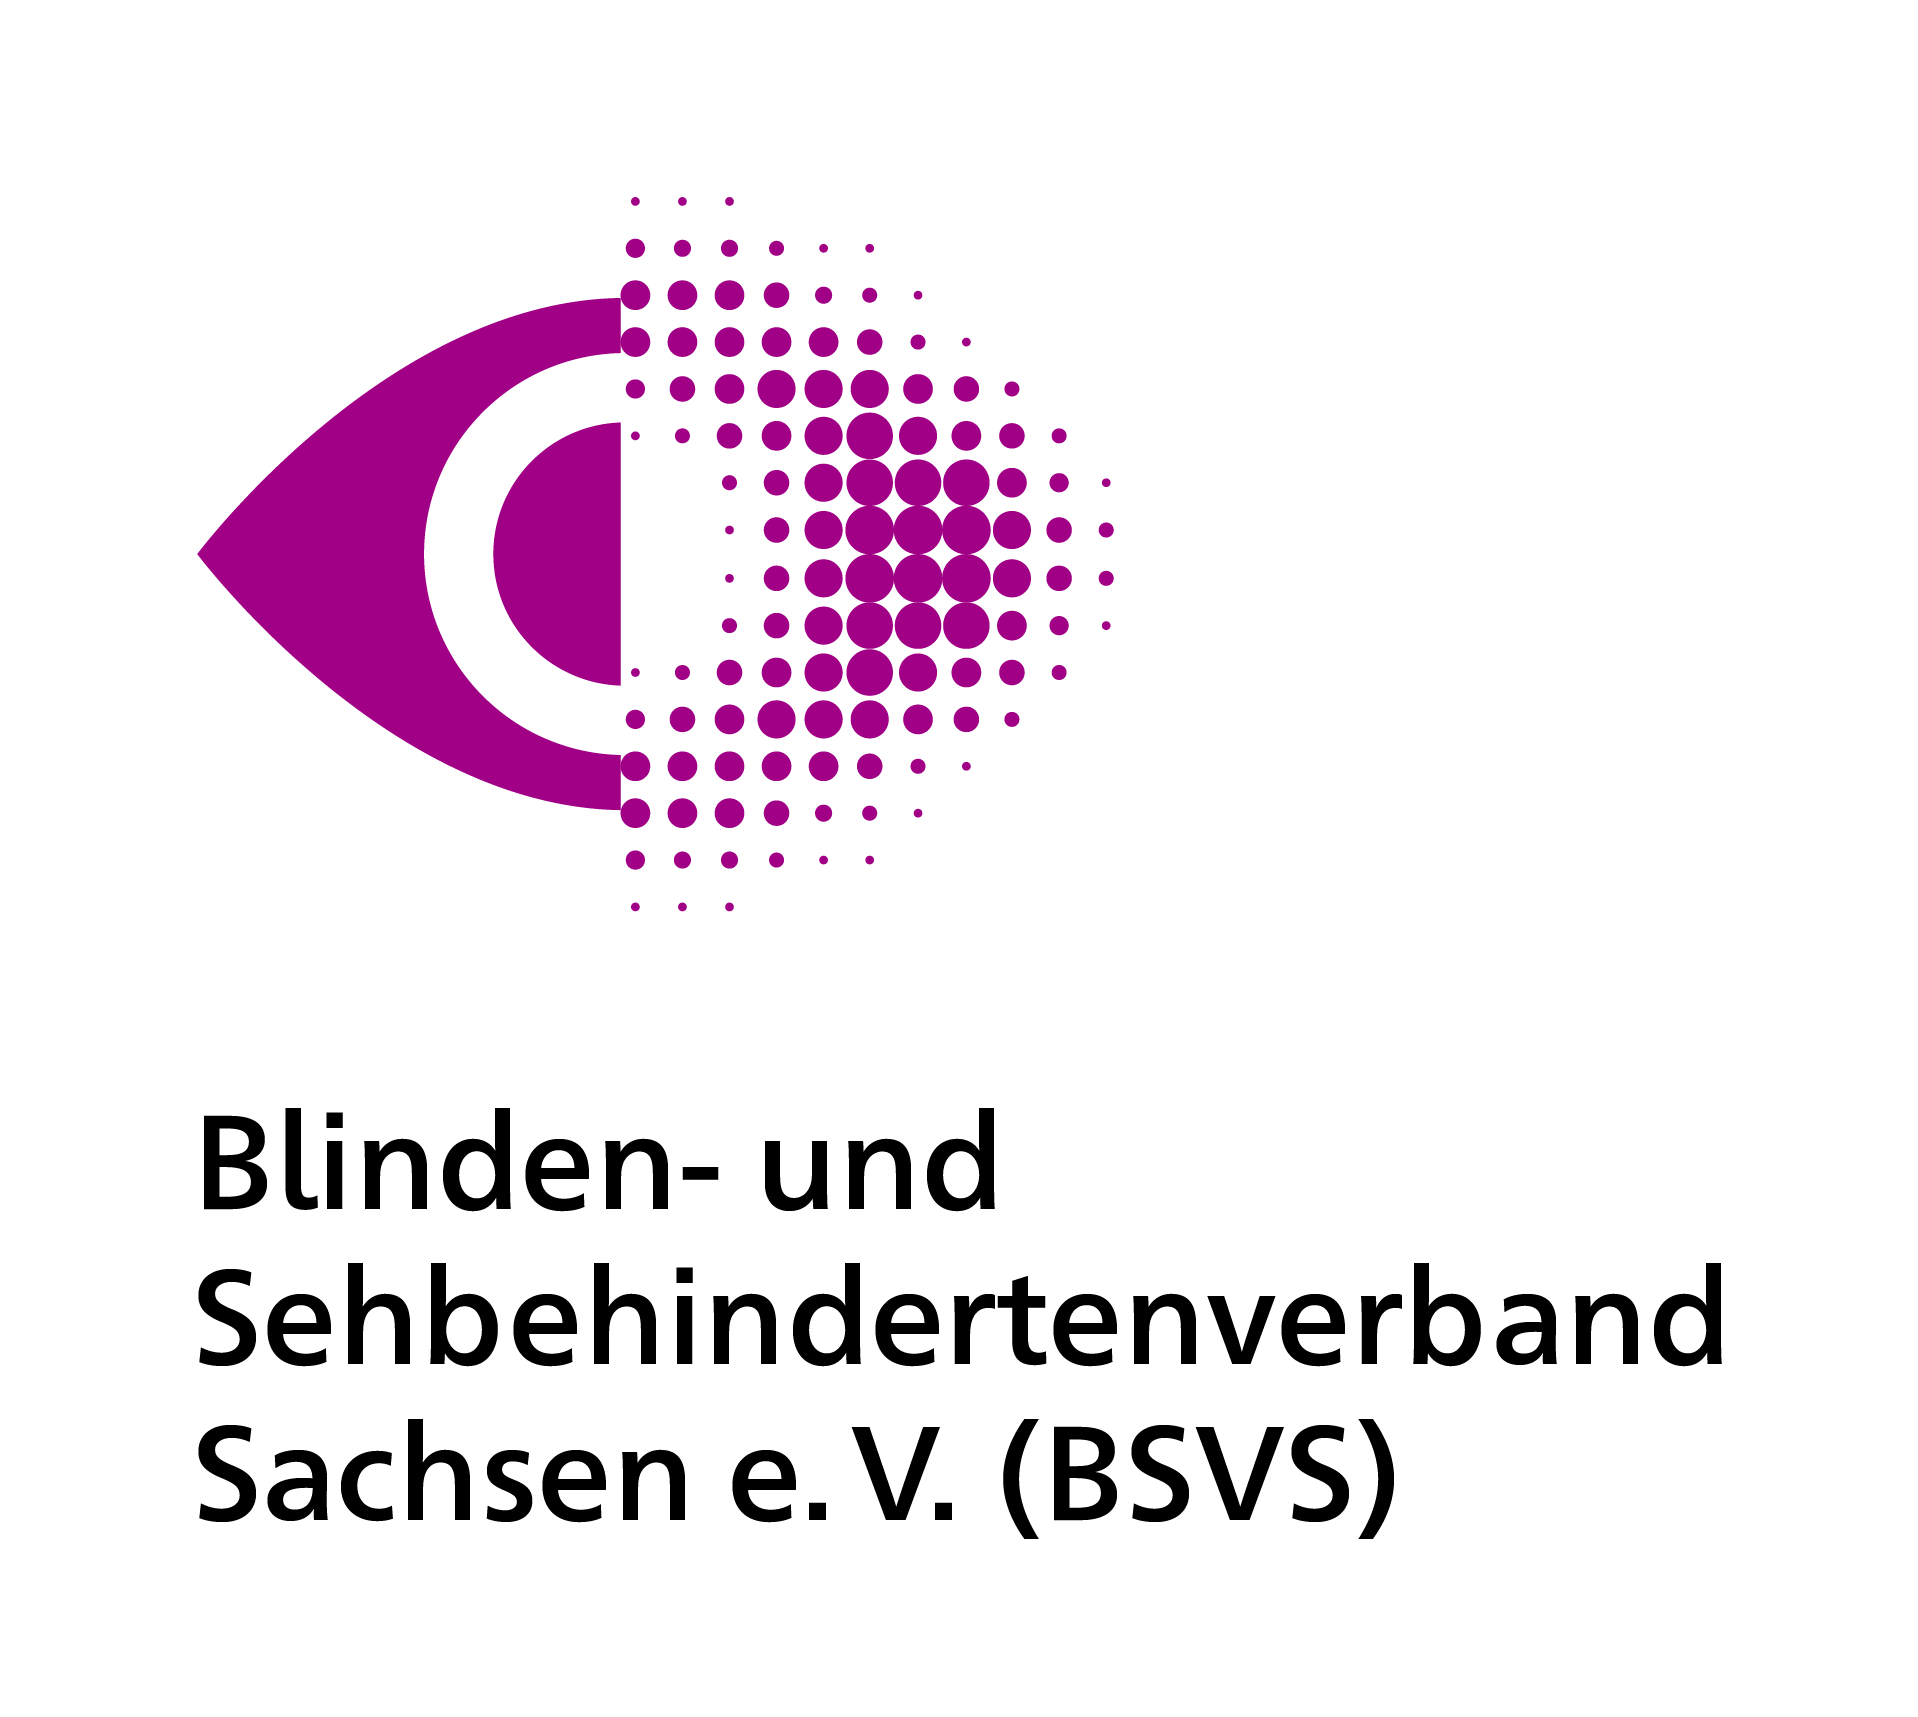 Neues gemeinsames Bildzeichen ist ein stilisiertes purpurfarbenes Auge, die linke Hälfte klar konturiert, während die rechte mit unterschiedlich großen Rasterpunkten unscharf dargestellt wird.